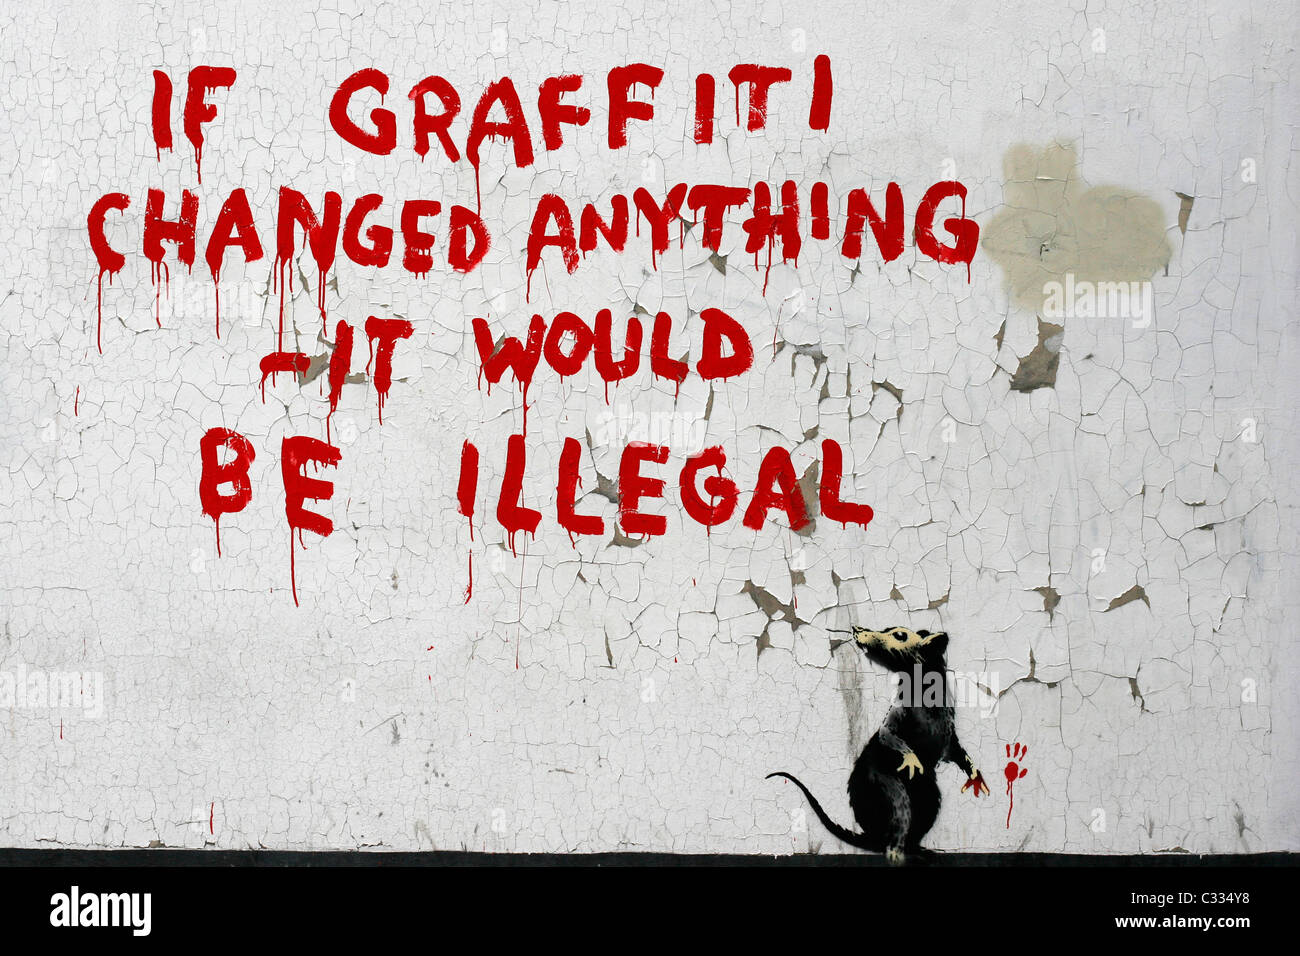 Banksy Graffiti sur un mur de Londres, si l'écriture graffiti changé quoi que ce soit - il serait illégal Banque D'Images